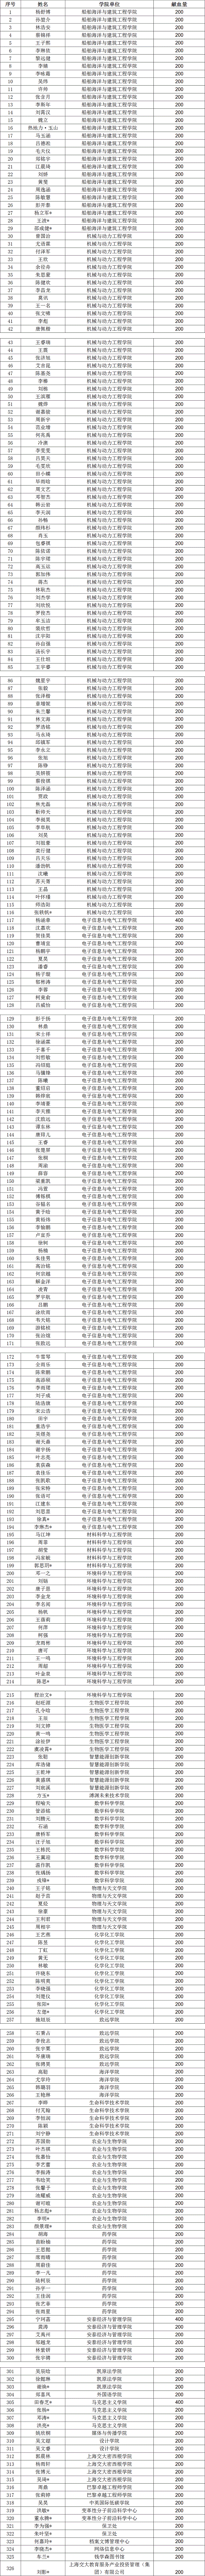 上海交通大学20221123献血名单【通告版】.gif